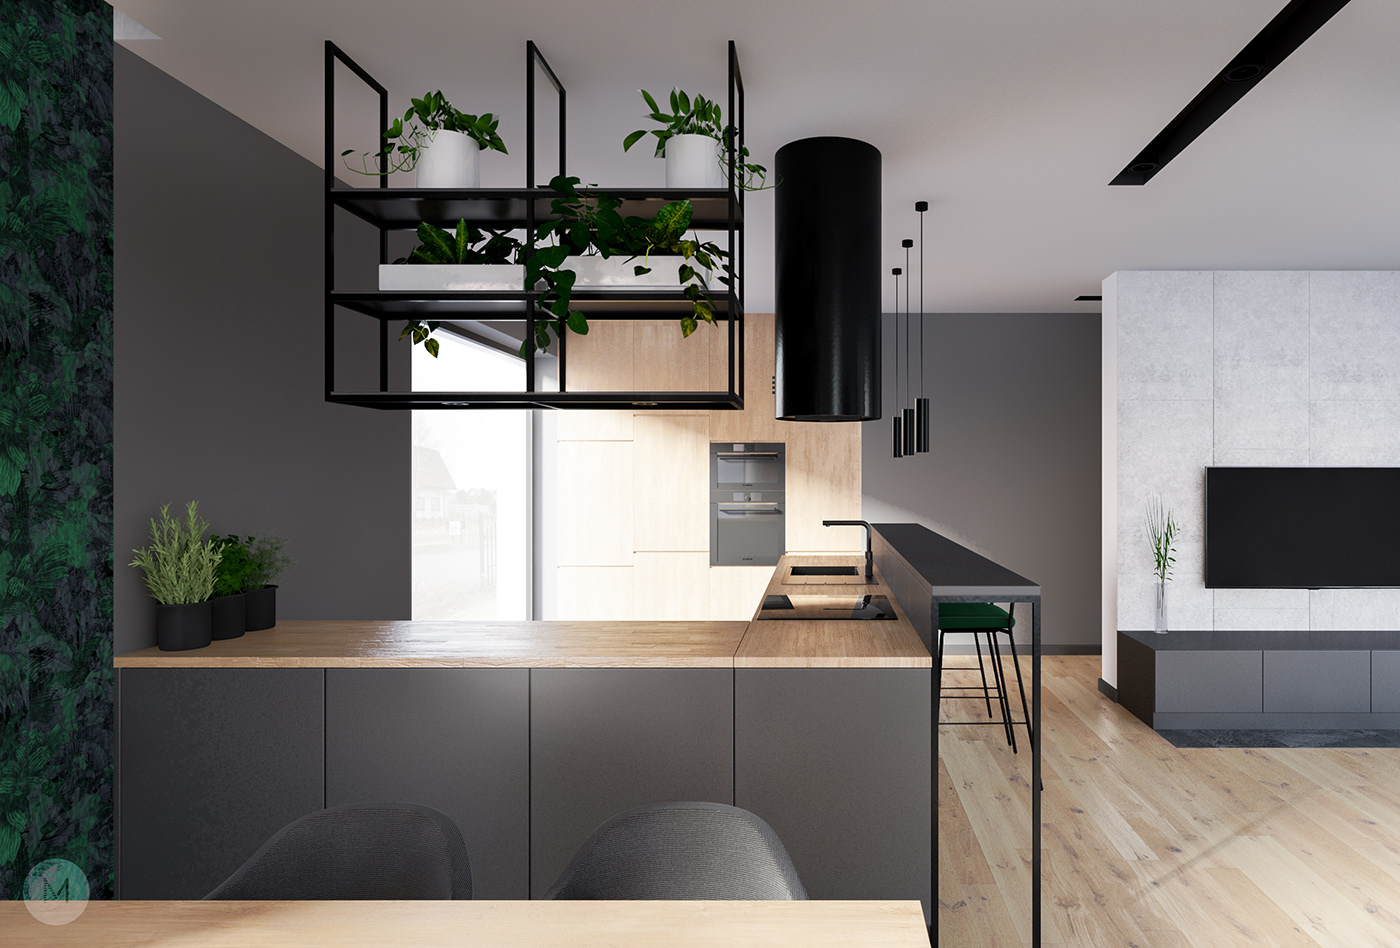 concrete green Interior kitchen kitchen design living room Minimalism modern modern interior wallpaper